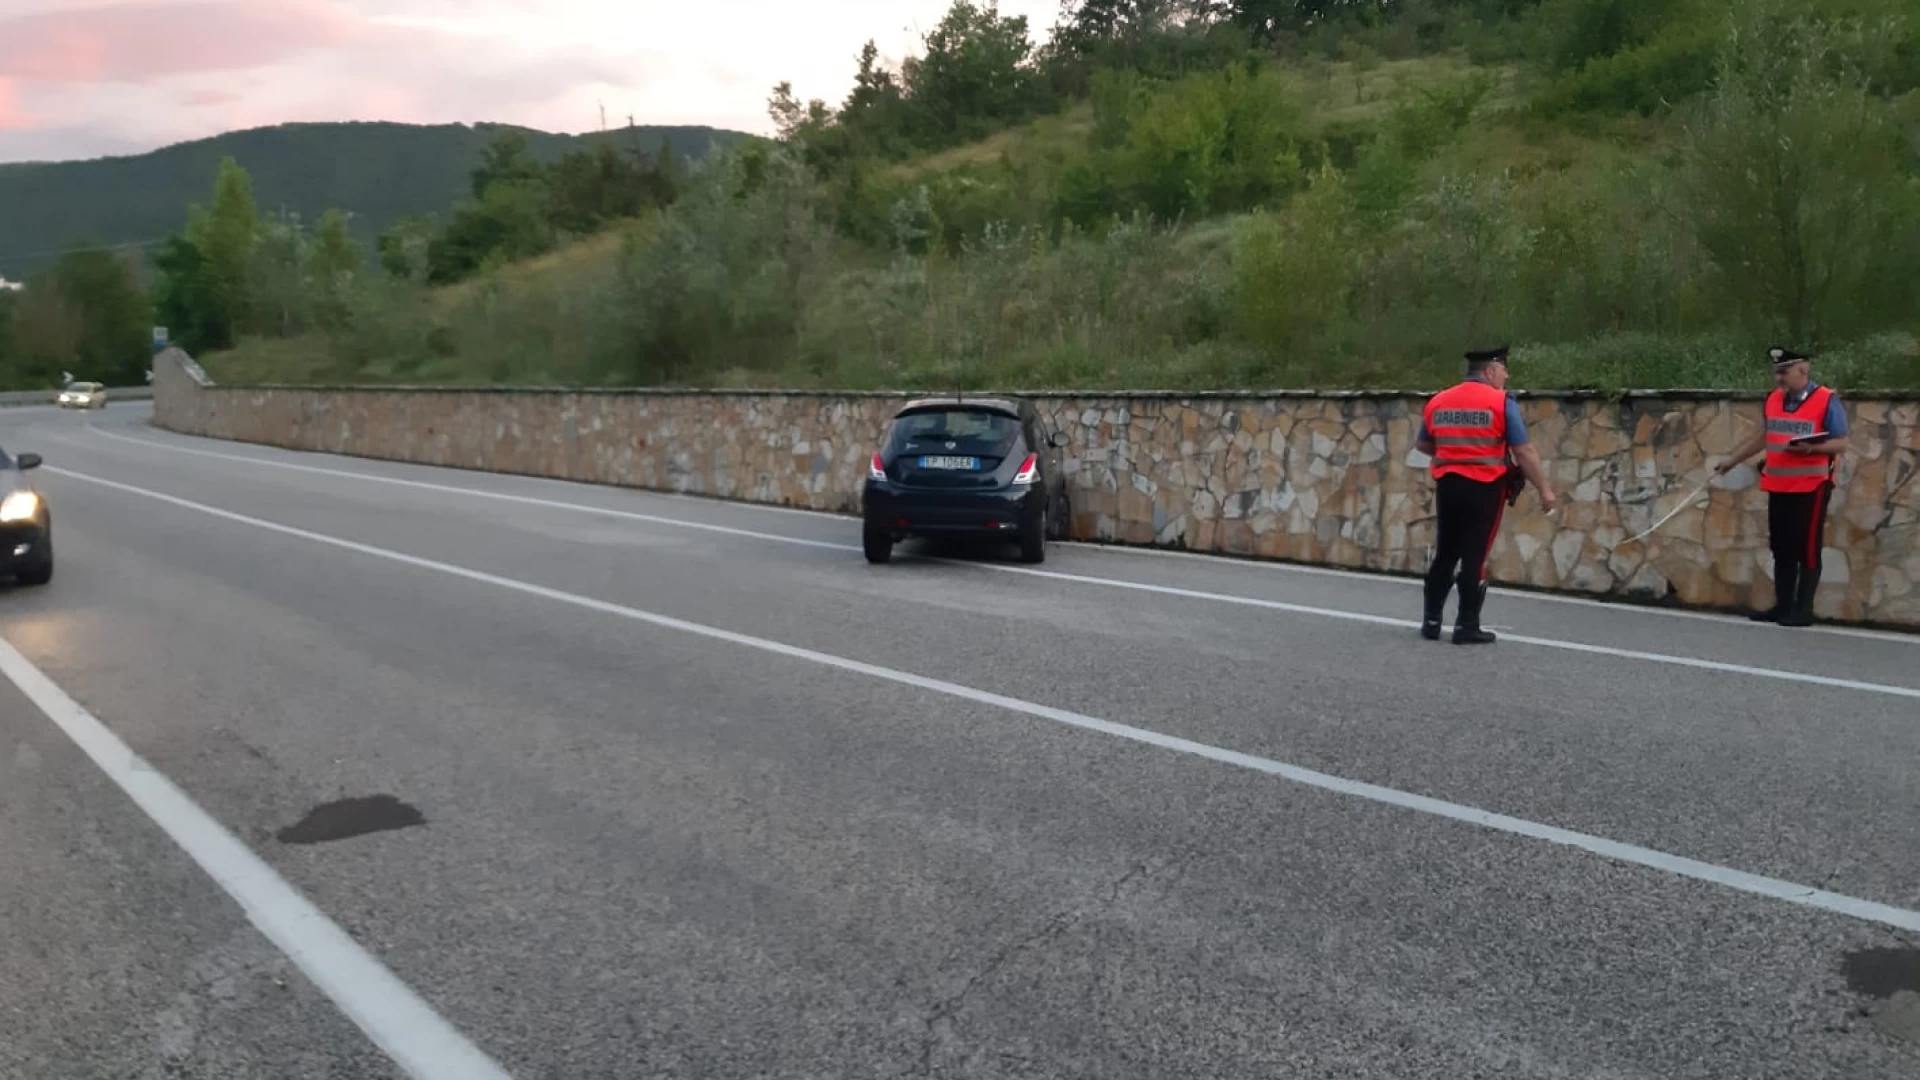 Colli a Volturno: si schianta con l'auto contro muretto di protezione sulla S.s 652